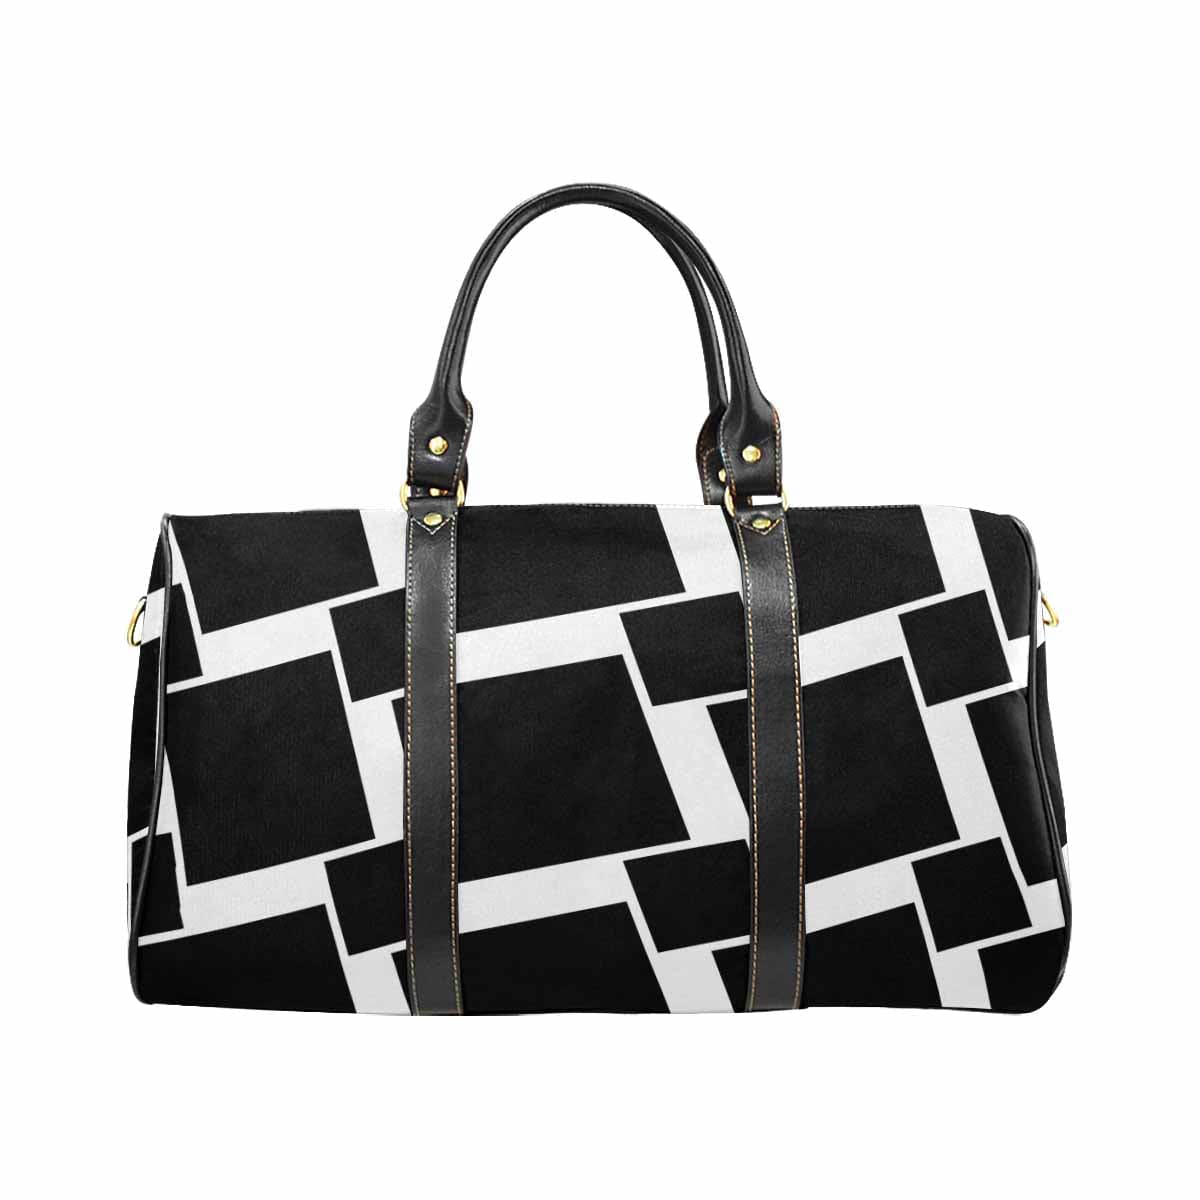 Travel Bag Adjustable Shoulder Strap Carry On Bag Black - Bags | Travel Bags